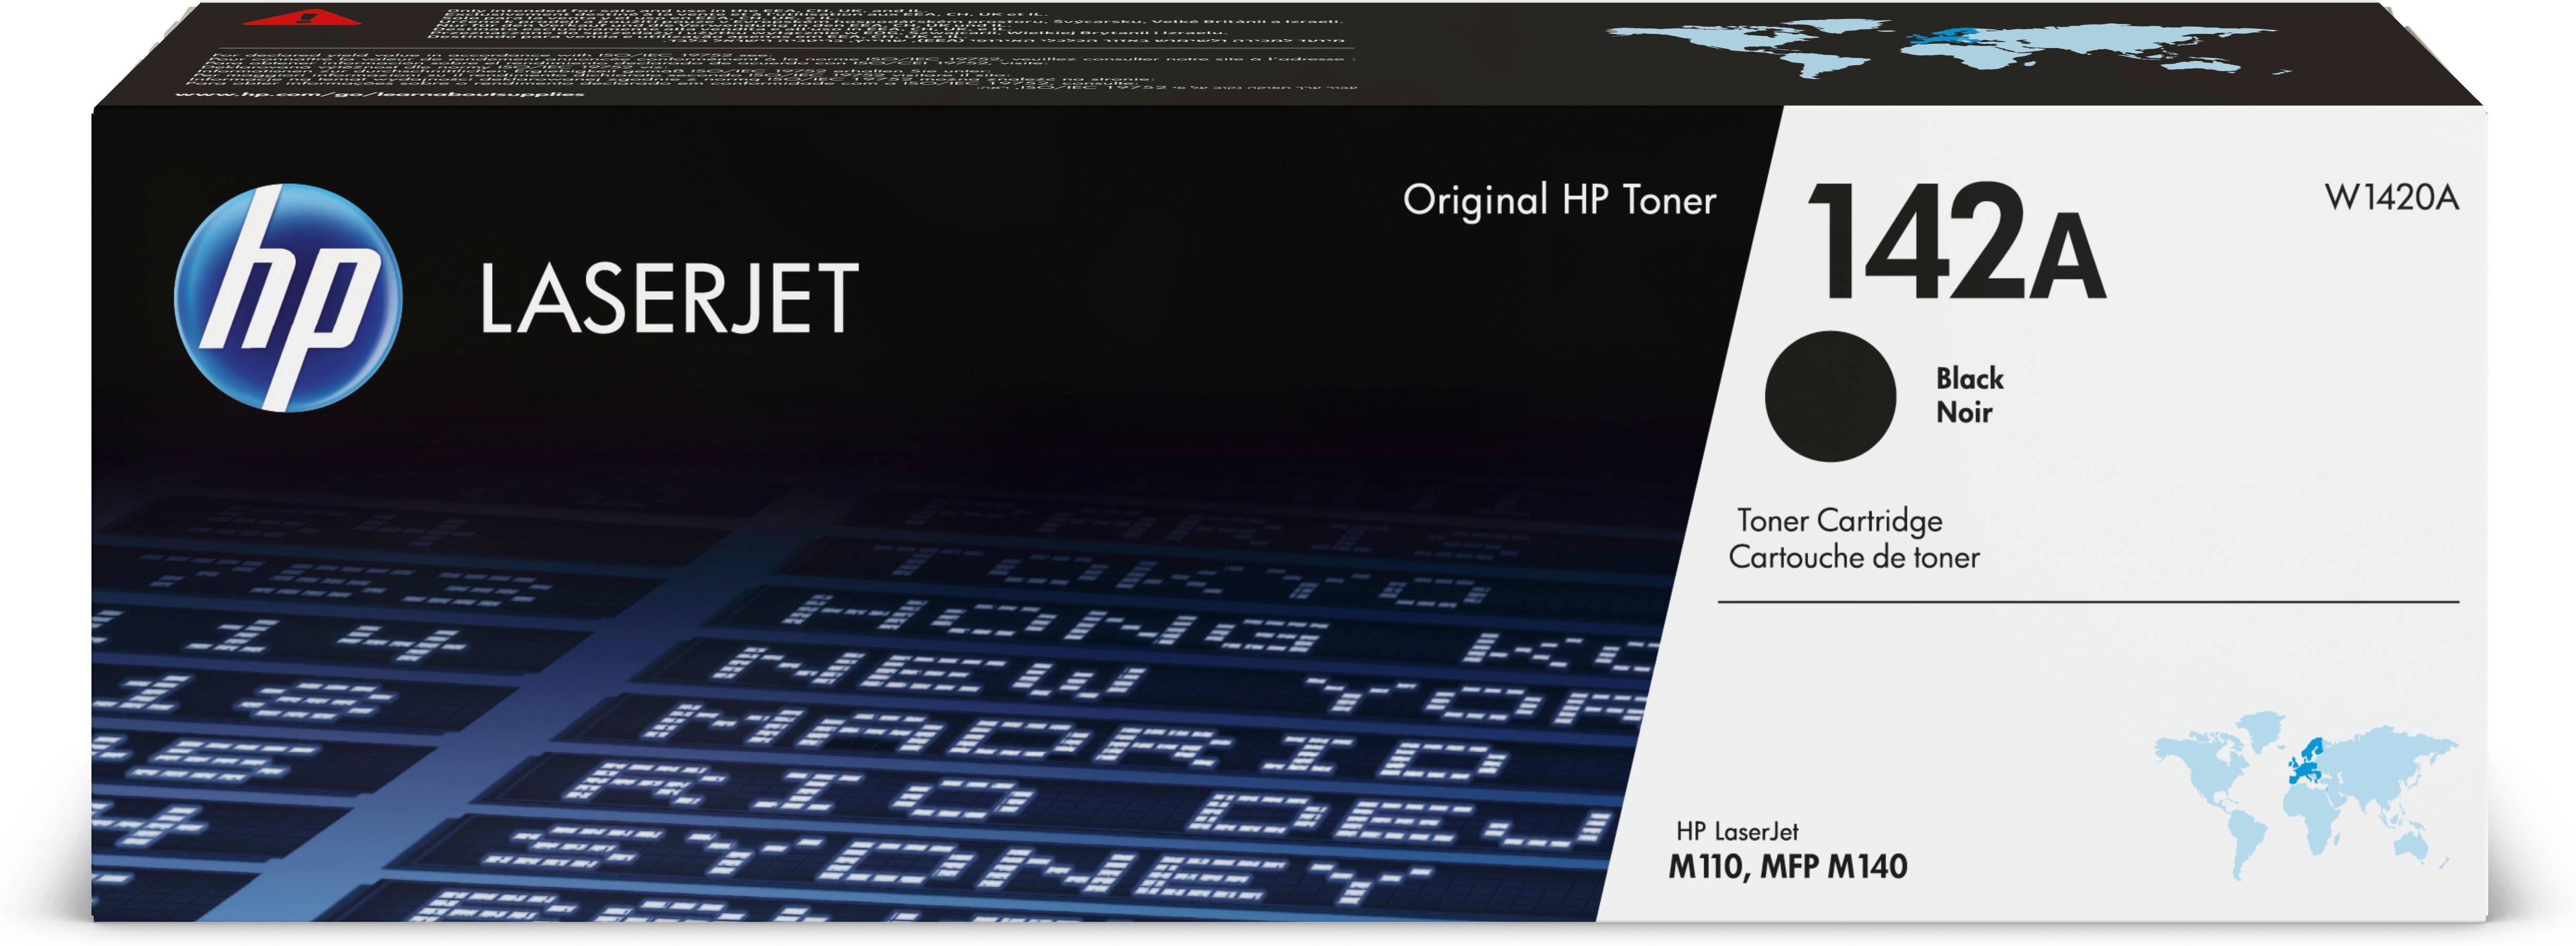 Rca Informatique - Image du produit : HP 142A BLACK ORIGINAL LASERJET TONER CARTRIDGE